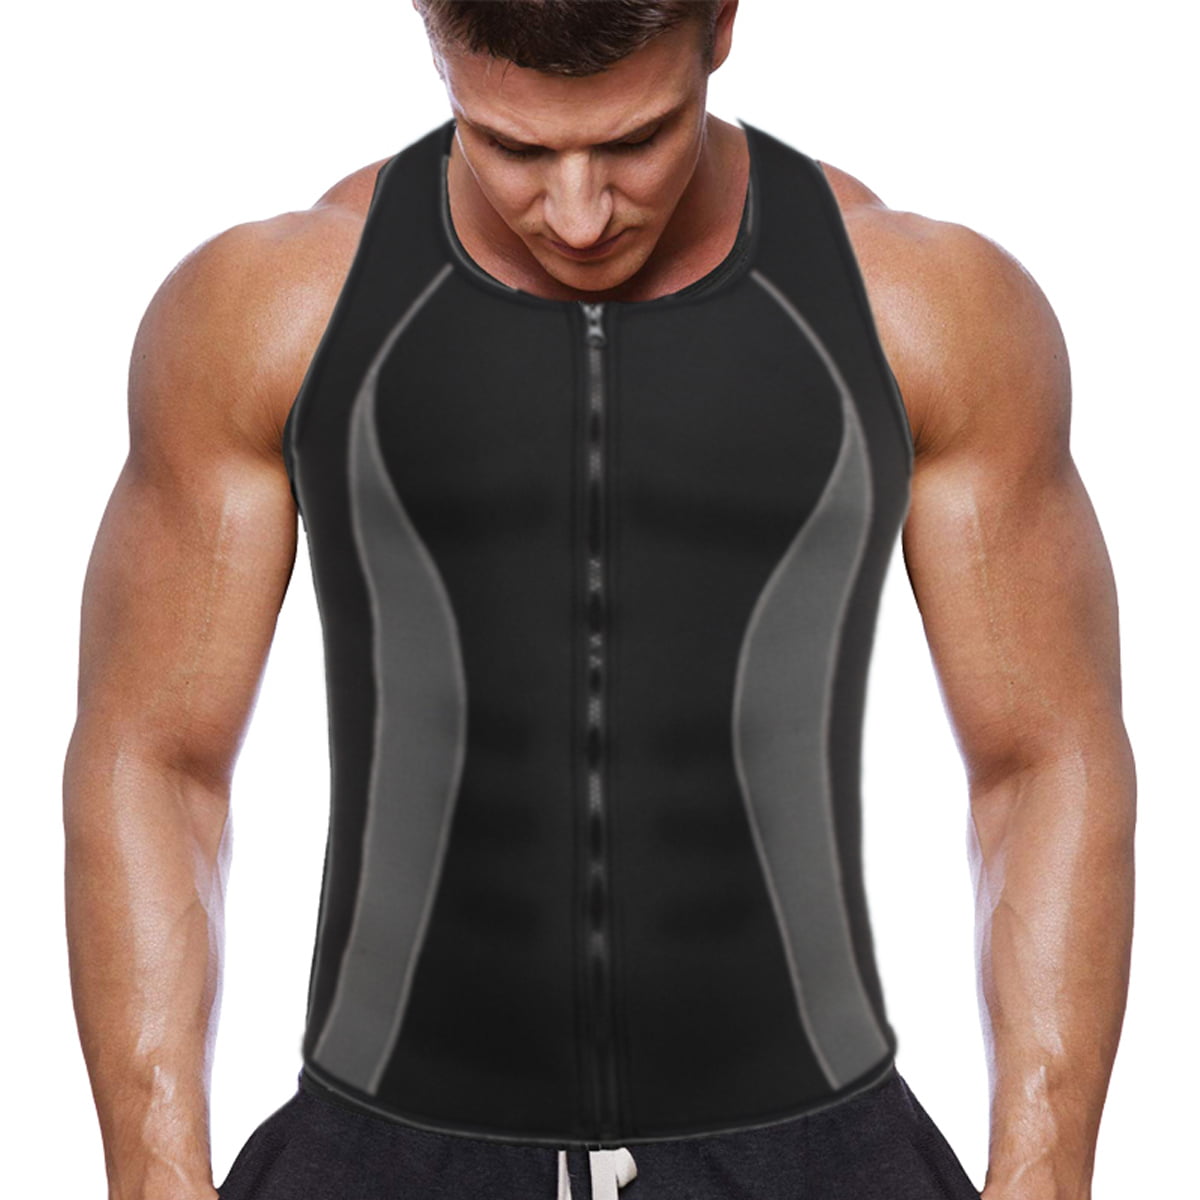 Details about   Men Sauna Sweat Vest Zipper Workout Tank Top Compression Shirt Body Corset Suit 